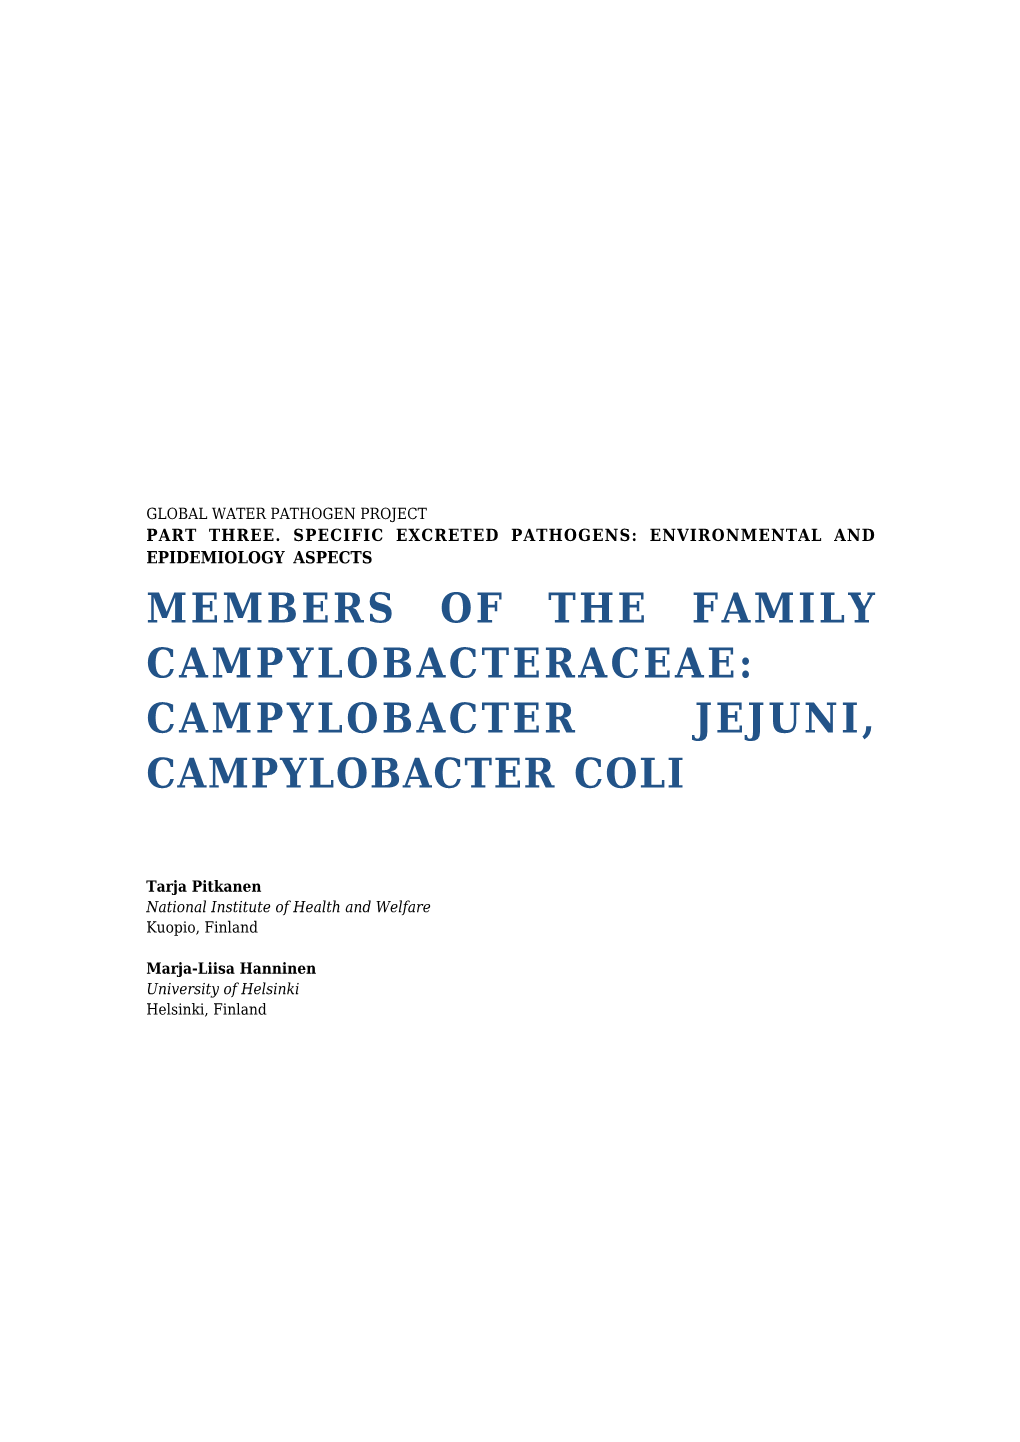 Members of the Family Campylobacteraceae: Campylobacter Jejuni, Campylobacter Coli